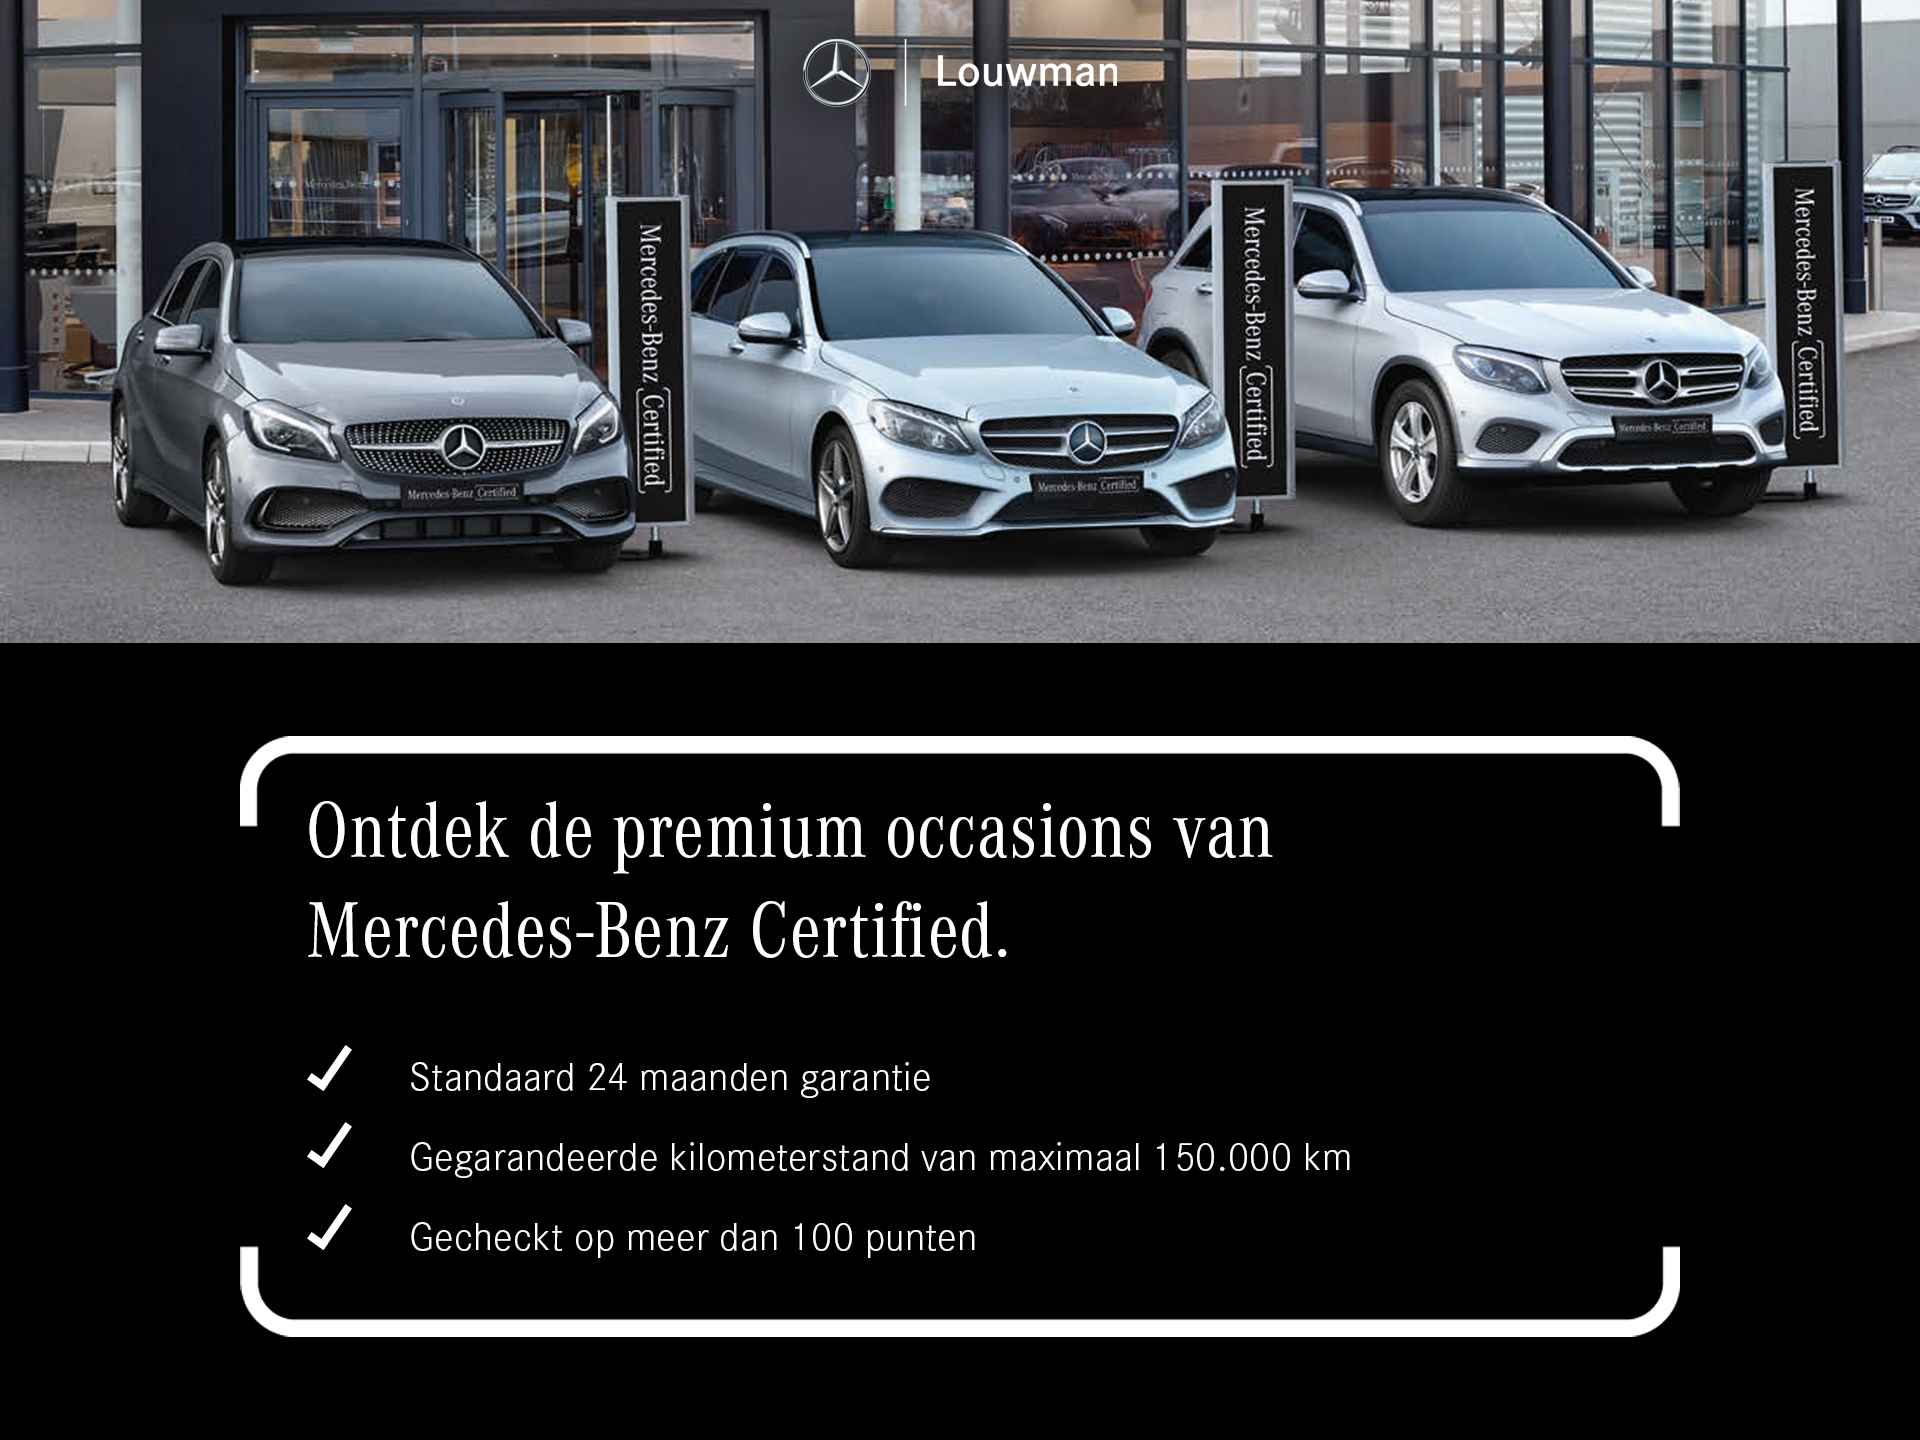 Mercedes-Benz GLE 350 e 4-MATIC AMG Nightpakket Limited 5 spaaks lichtmetalen velgen | Trekhaak | Airmatic | Treeplanken | Alarm klasse 3 |  Augmented Reality | sfeerverlichting | DAB | Parking support | inclusief 24 maanden MB Certified garantie voor europa - 44/45